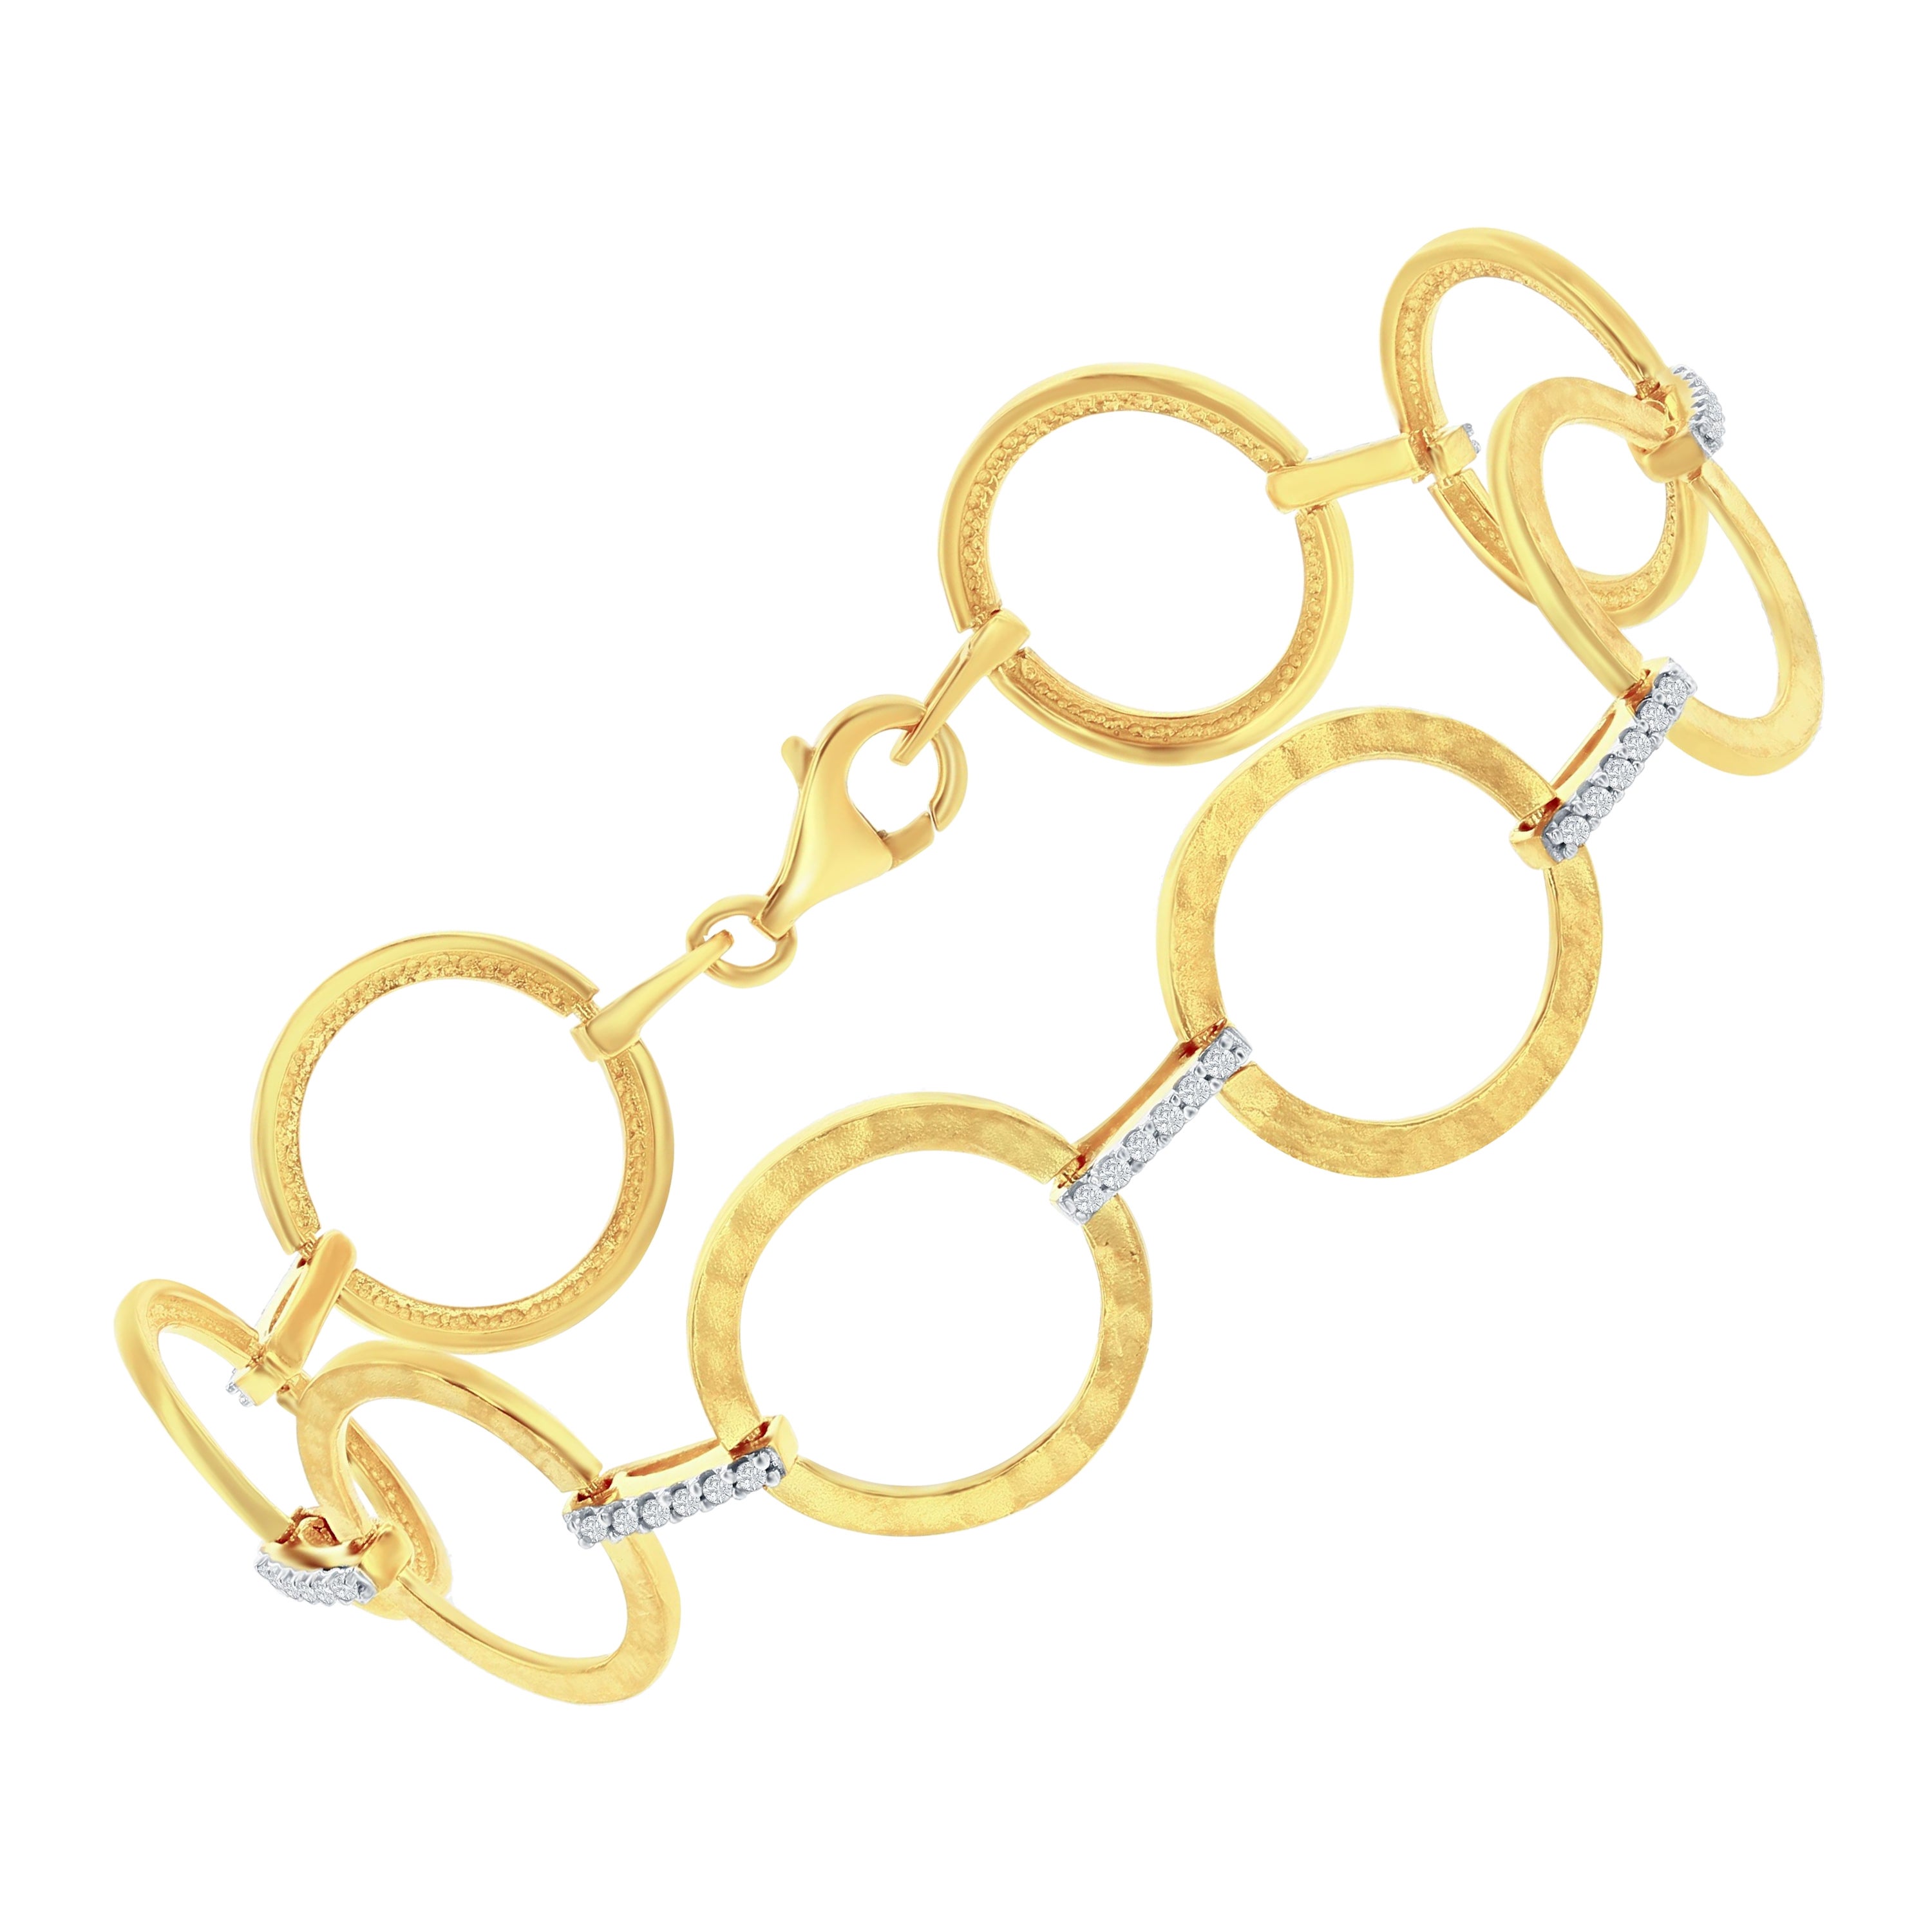 Offenes Kreis-Gliederarmband aus 14k Gelbgold, handgefertigt